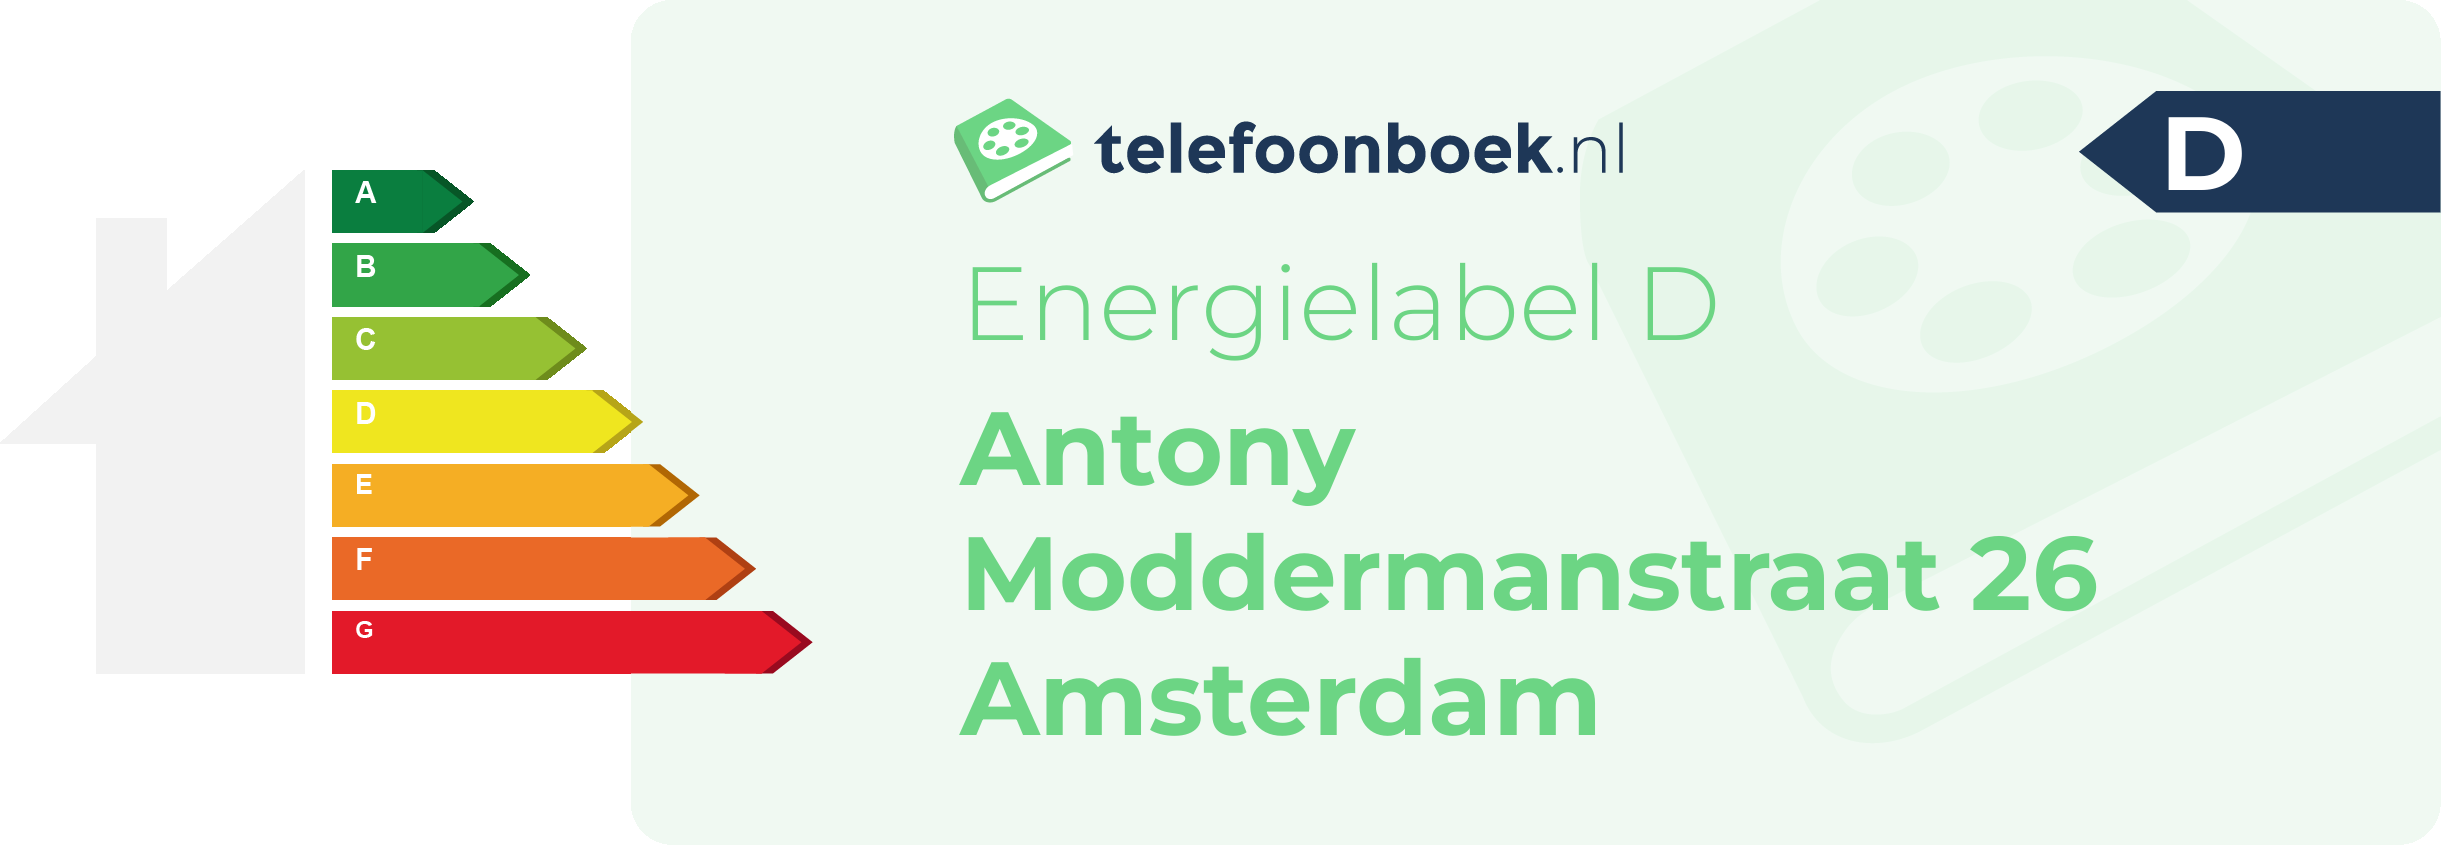 Energielabel Antony Moddermanstraat 26 Amsterdam